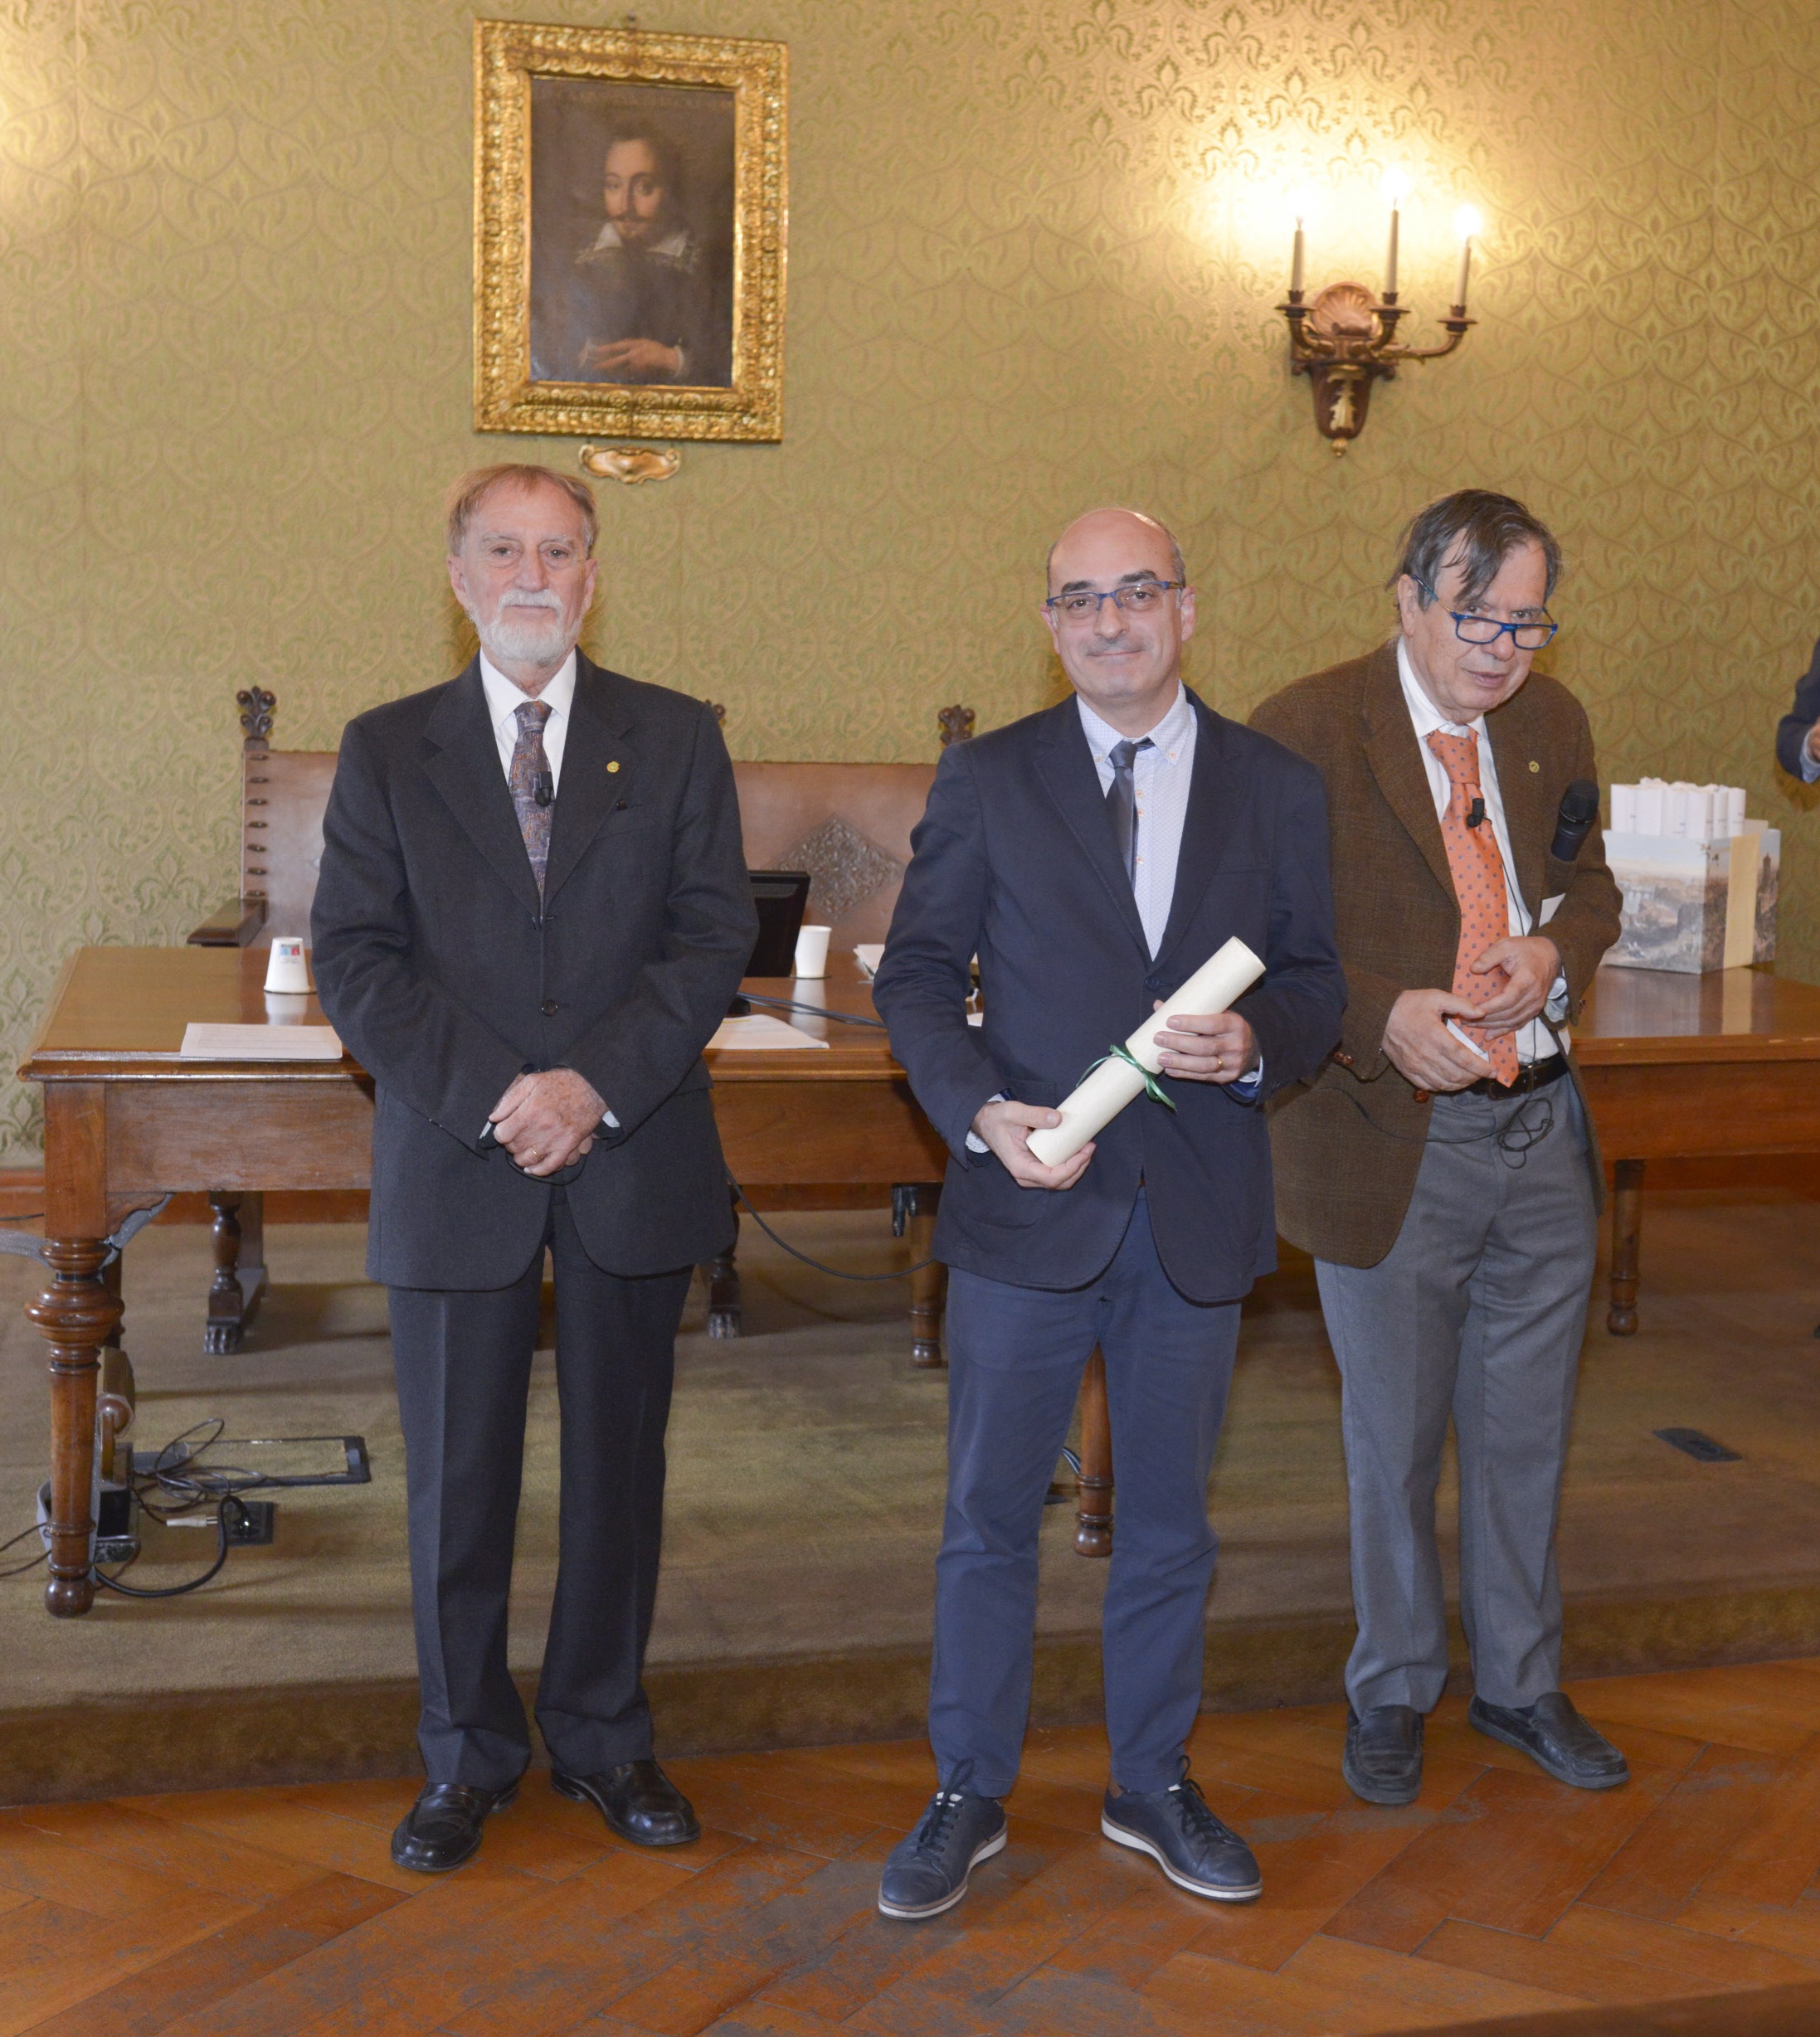 De izquierda a derecha: Roberto Antonelli, presidente de la Accademia di Lincei, Carles Lalueza-Fox investigador del IBE y director del MCNB, y Giorgio Parisi, premio Nobel de física. Carles Lalueza-Fox en la Academia de Lincei